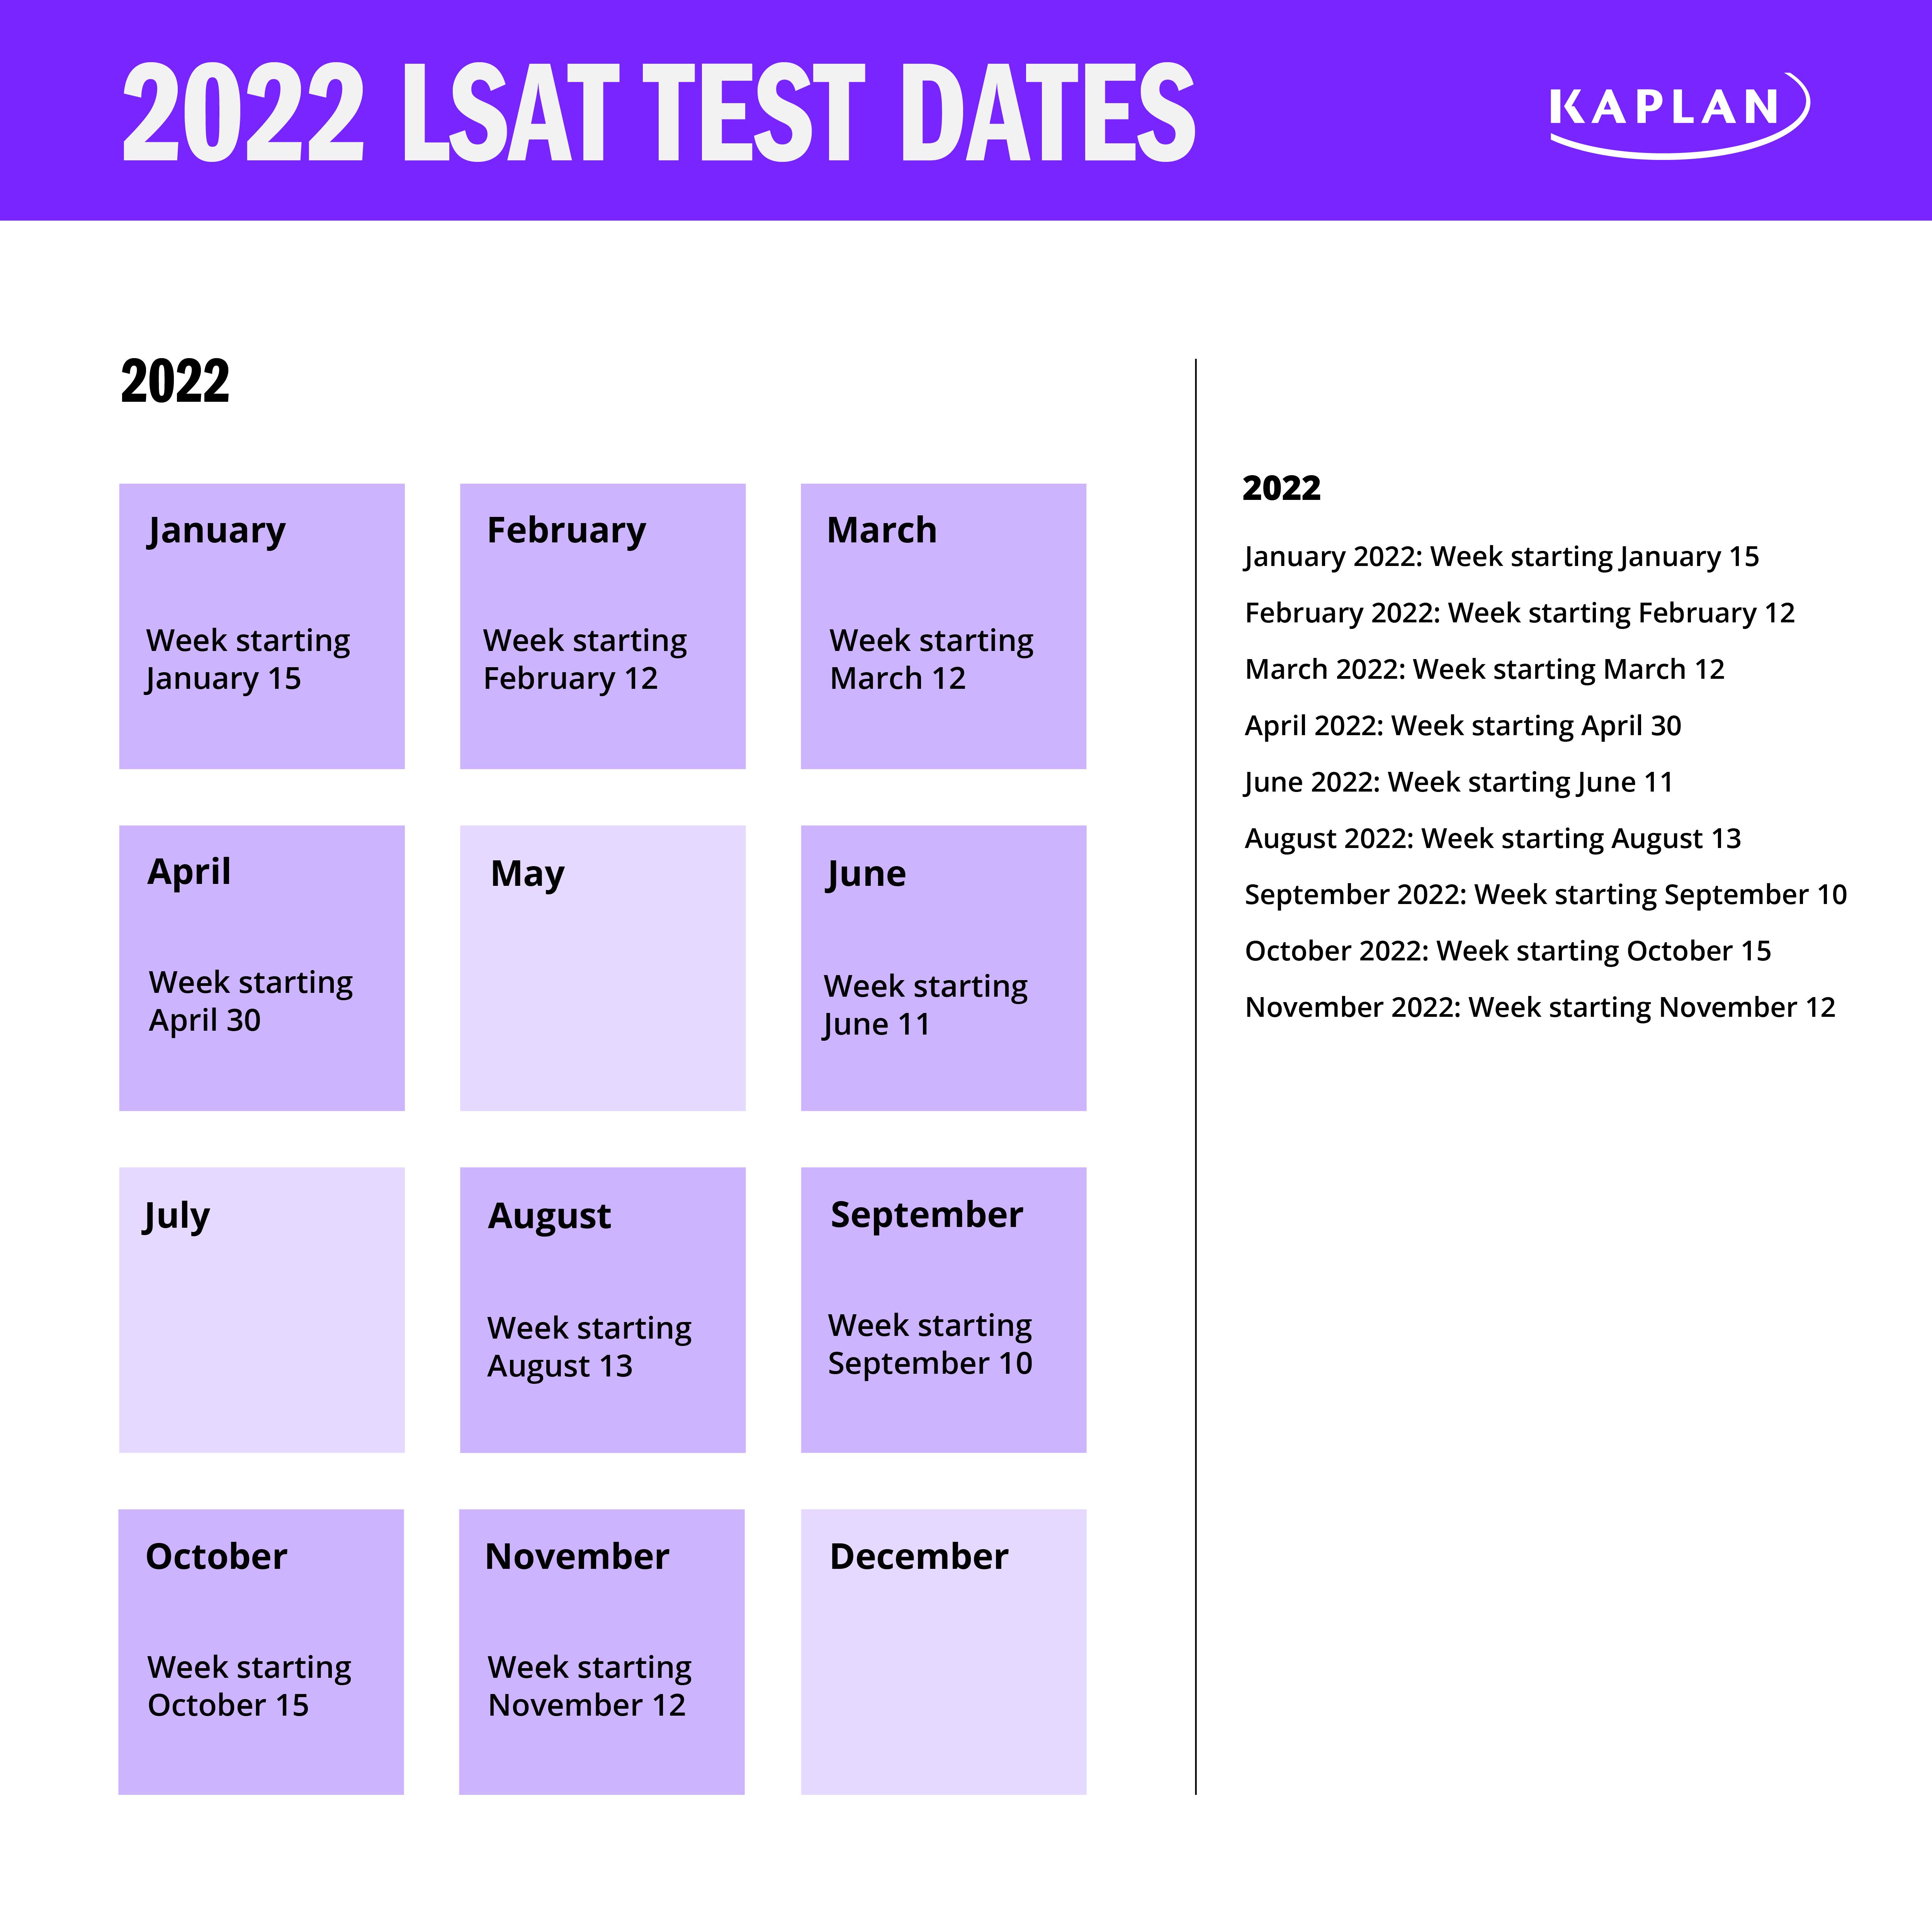 LSAT Test Dates 2022